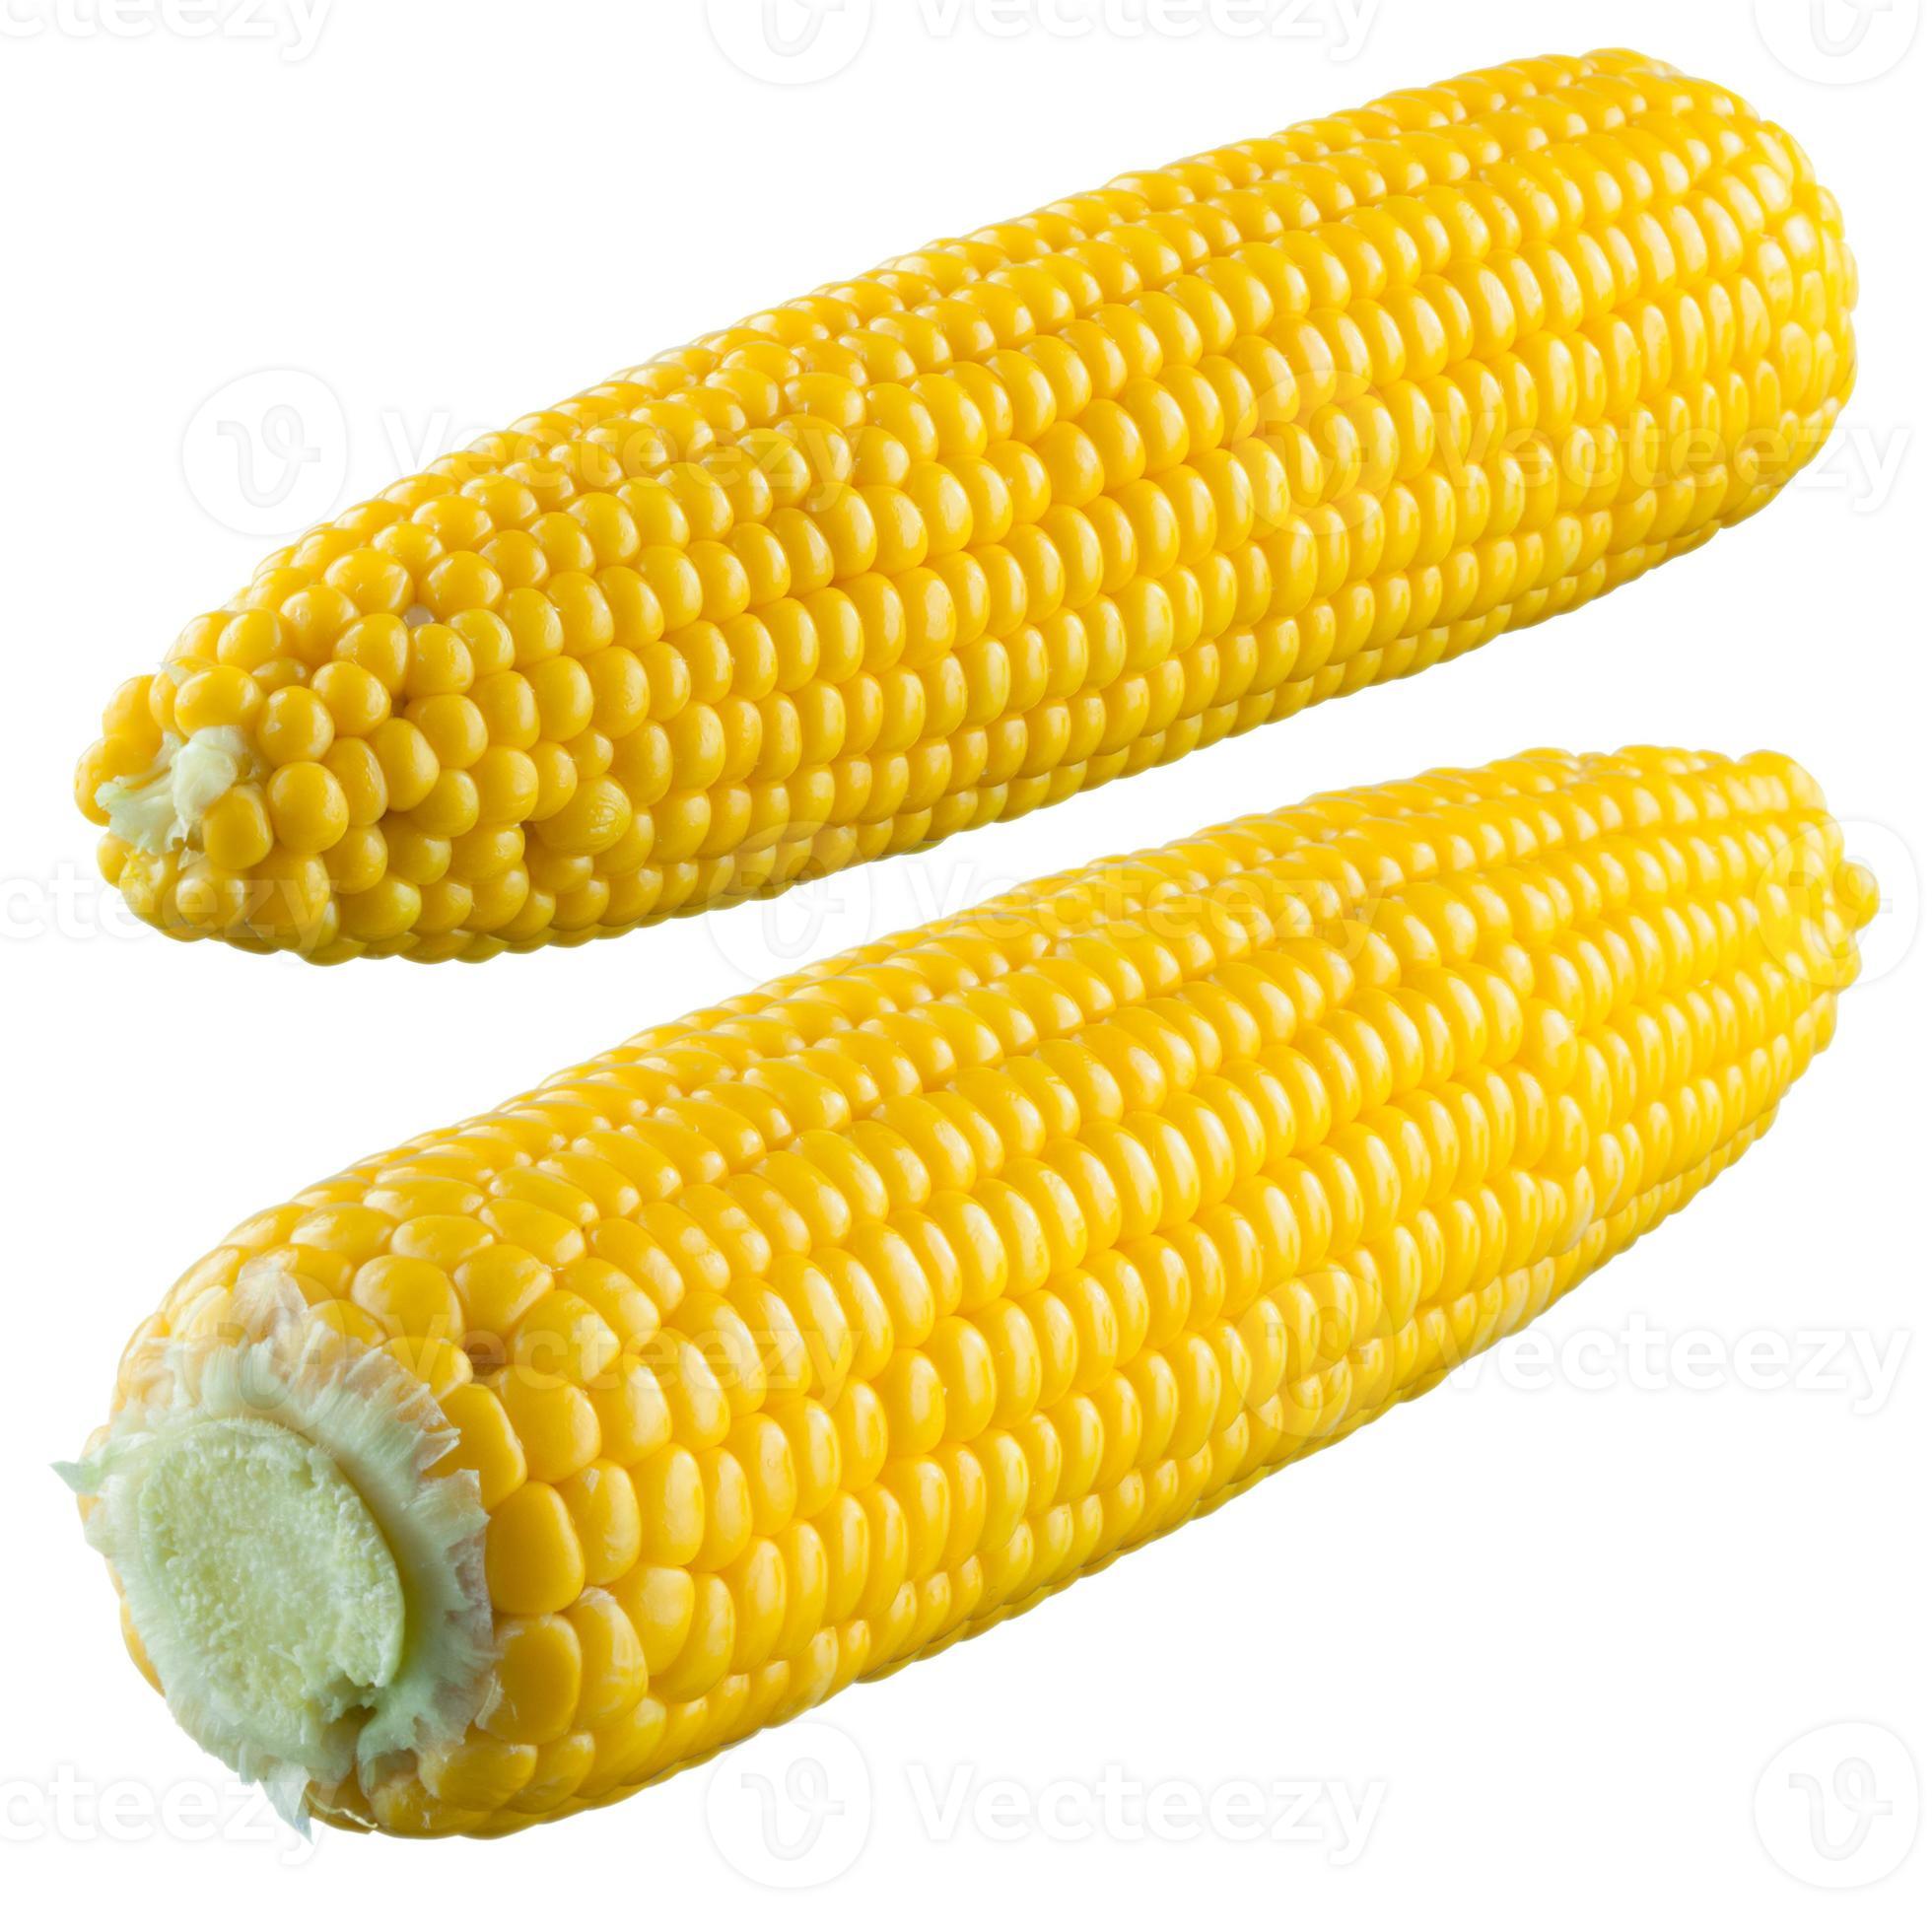 maïs geïsoleerd op een witte achtergrond. met uitknippad foto